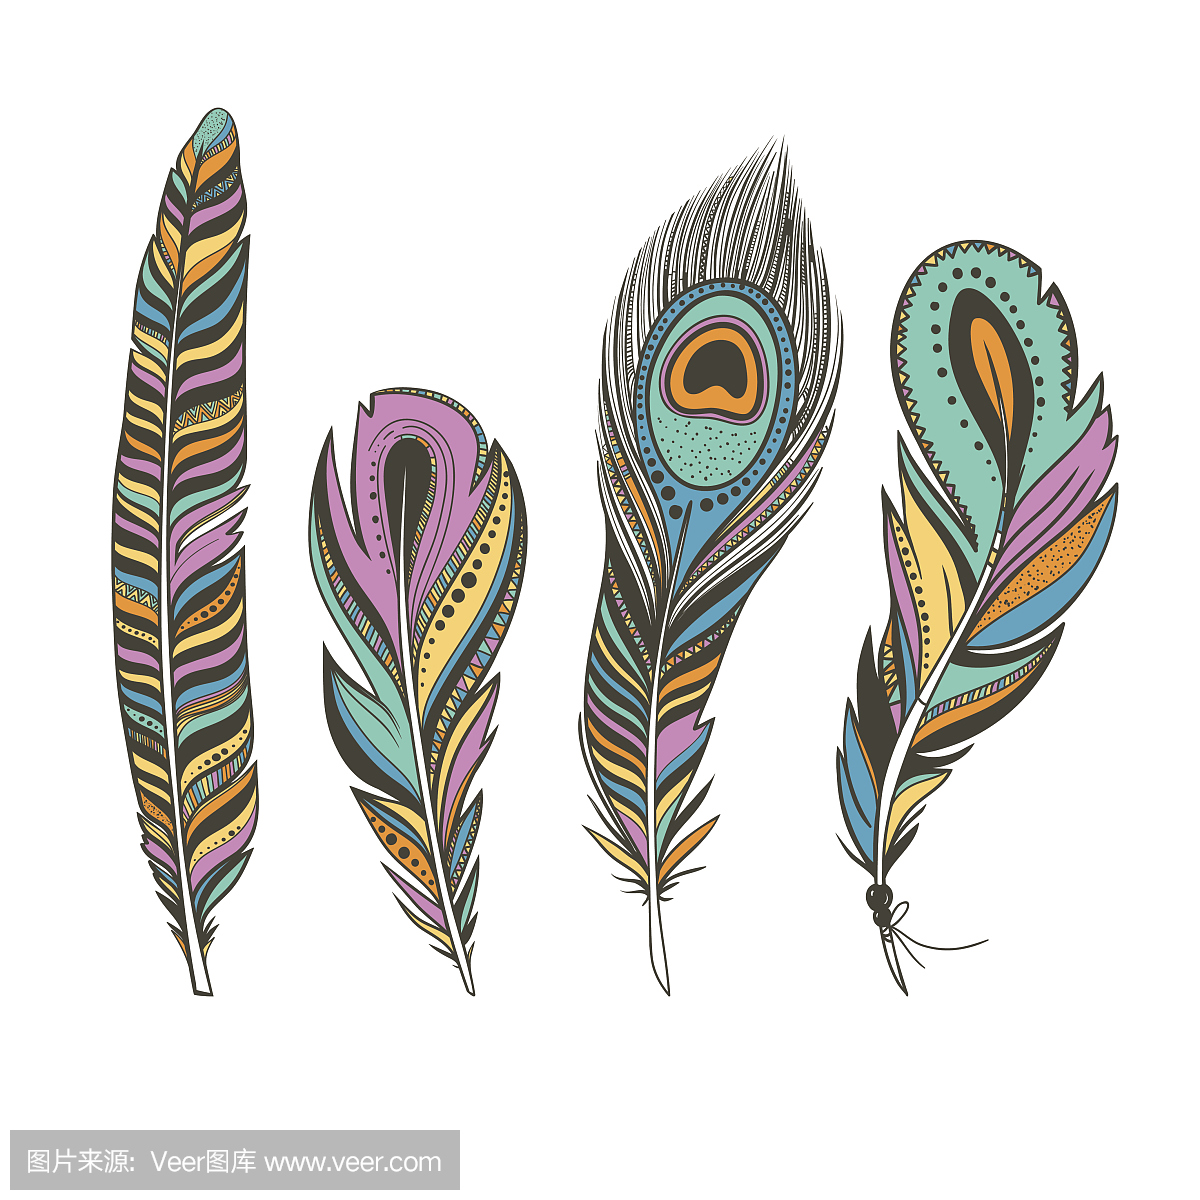 一套五颜六色的鸟类羽毛与民族装饰品